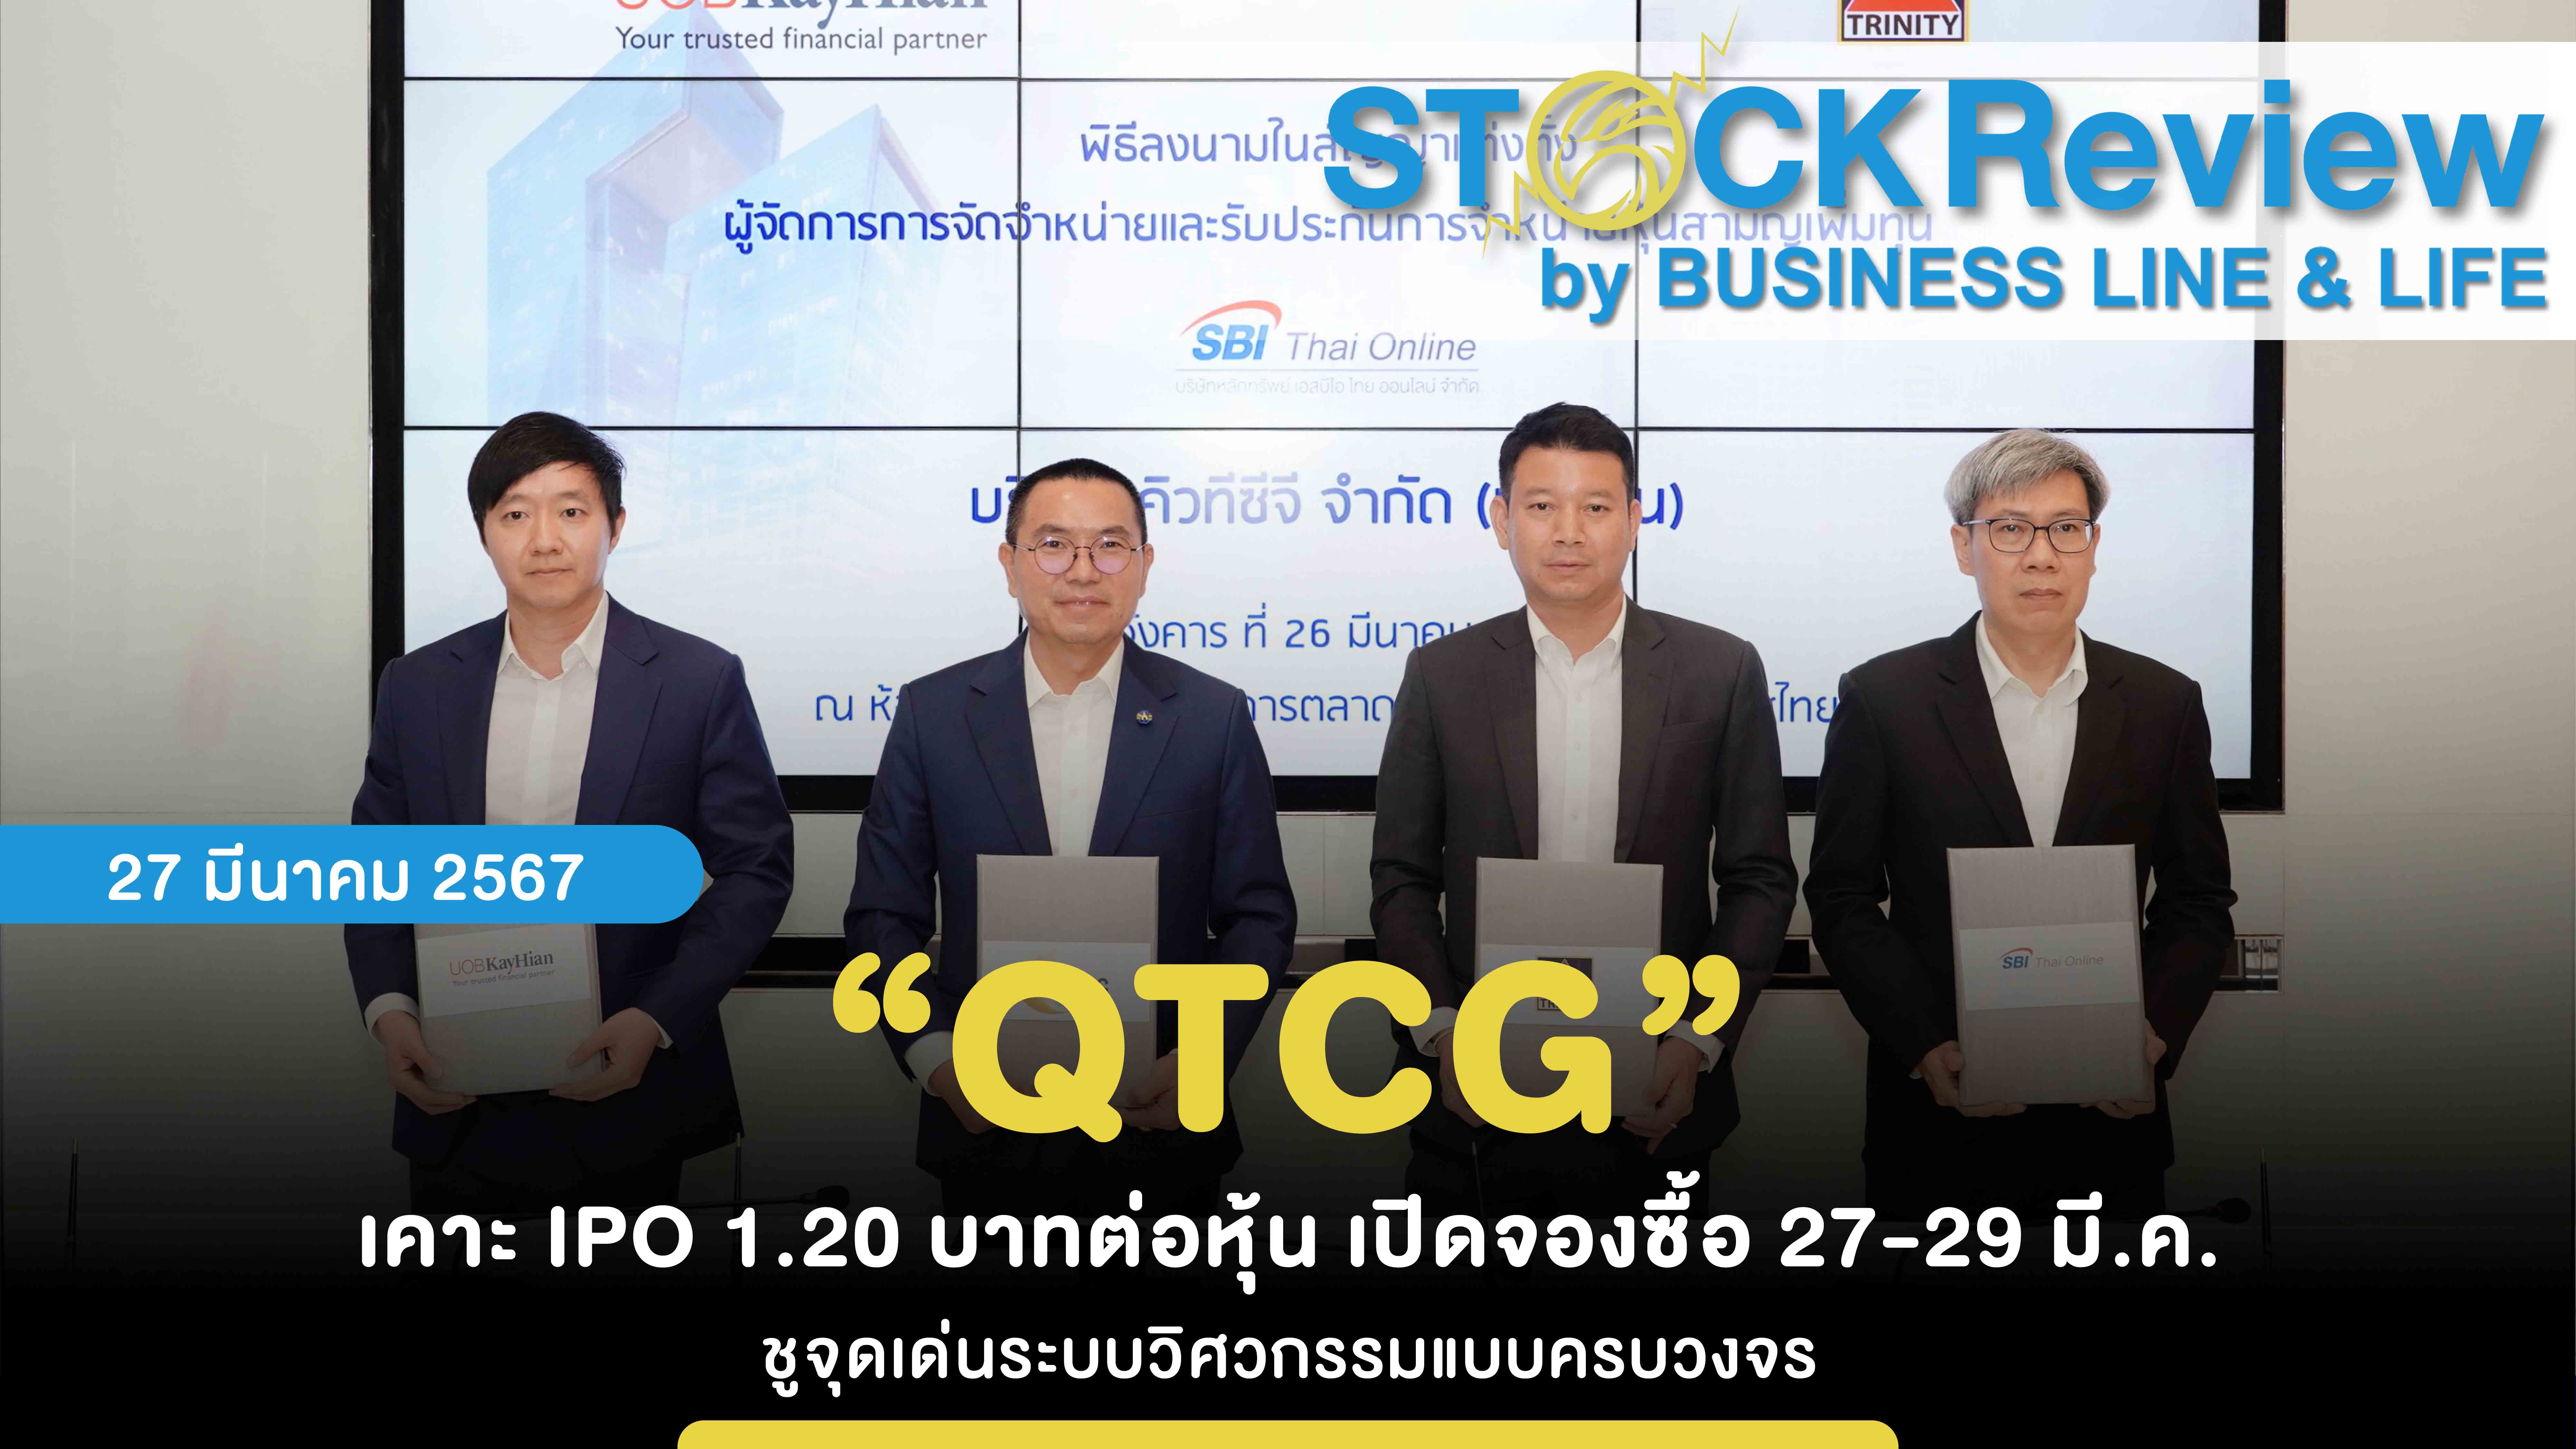 “QTCG” เคาะ IPO 1.20 บาทต่อหุ้น เปิดจองซื้อ 27-29 มี.ค. ชูจุดเด่นระบบวิศวกรรมแบบครบวงจร